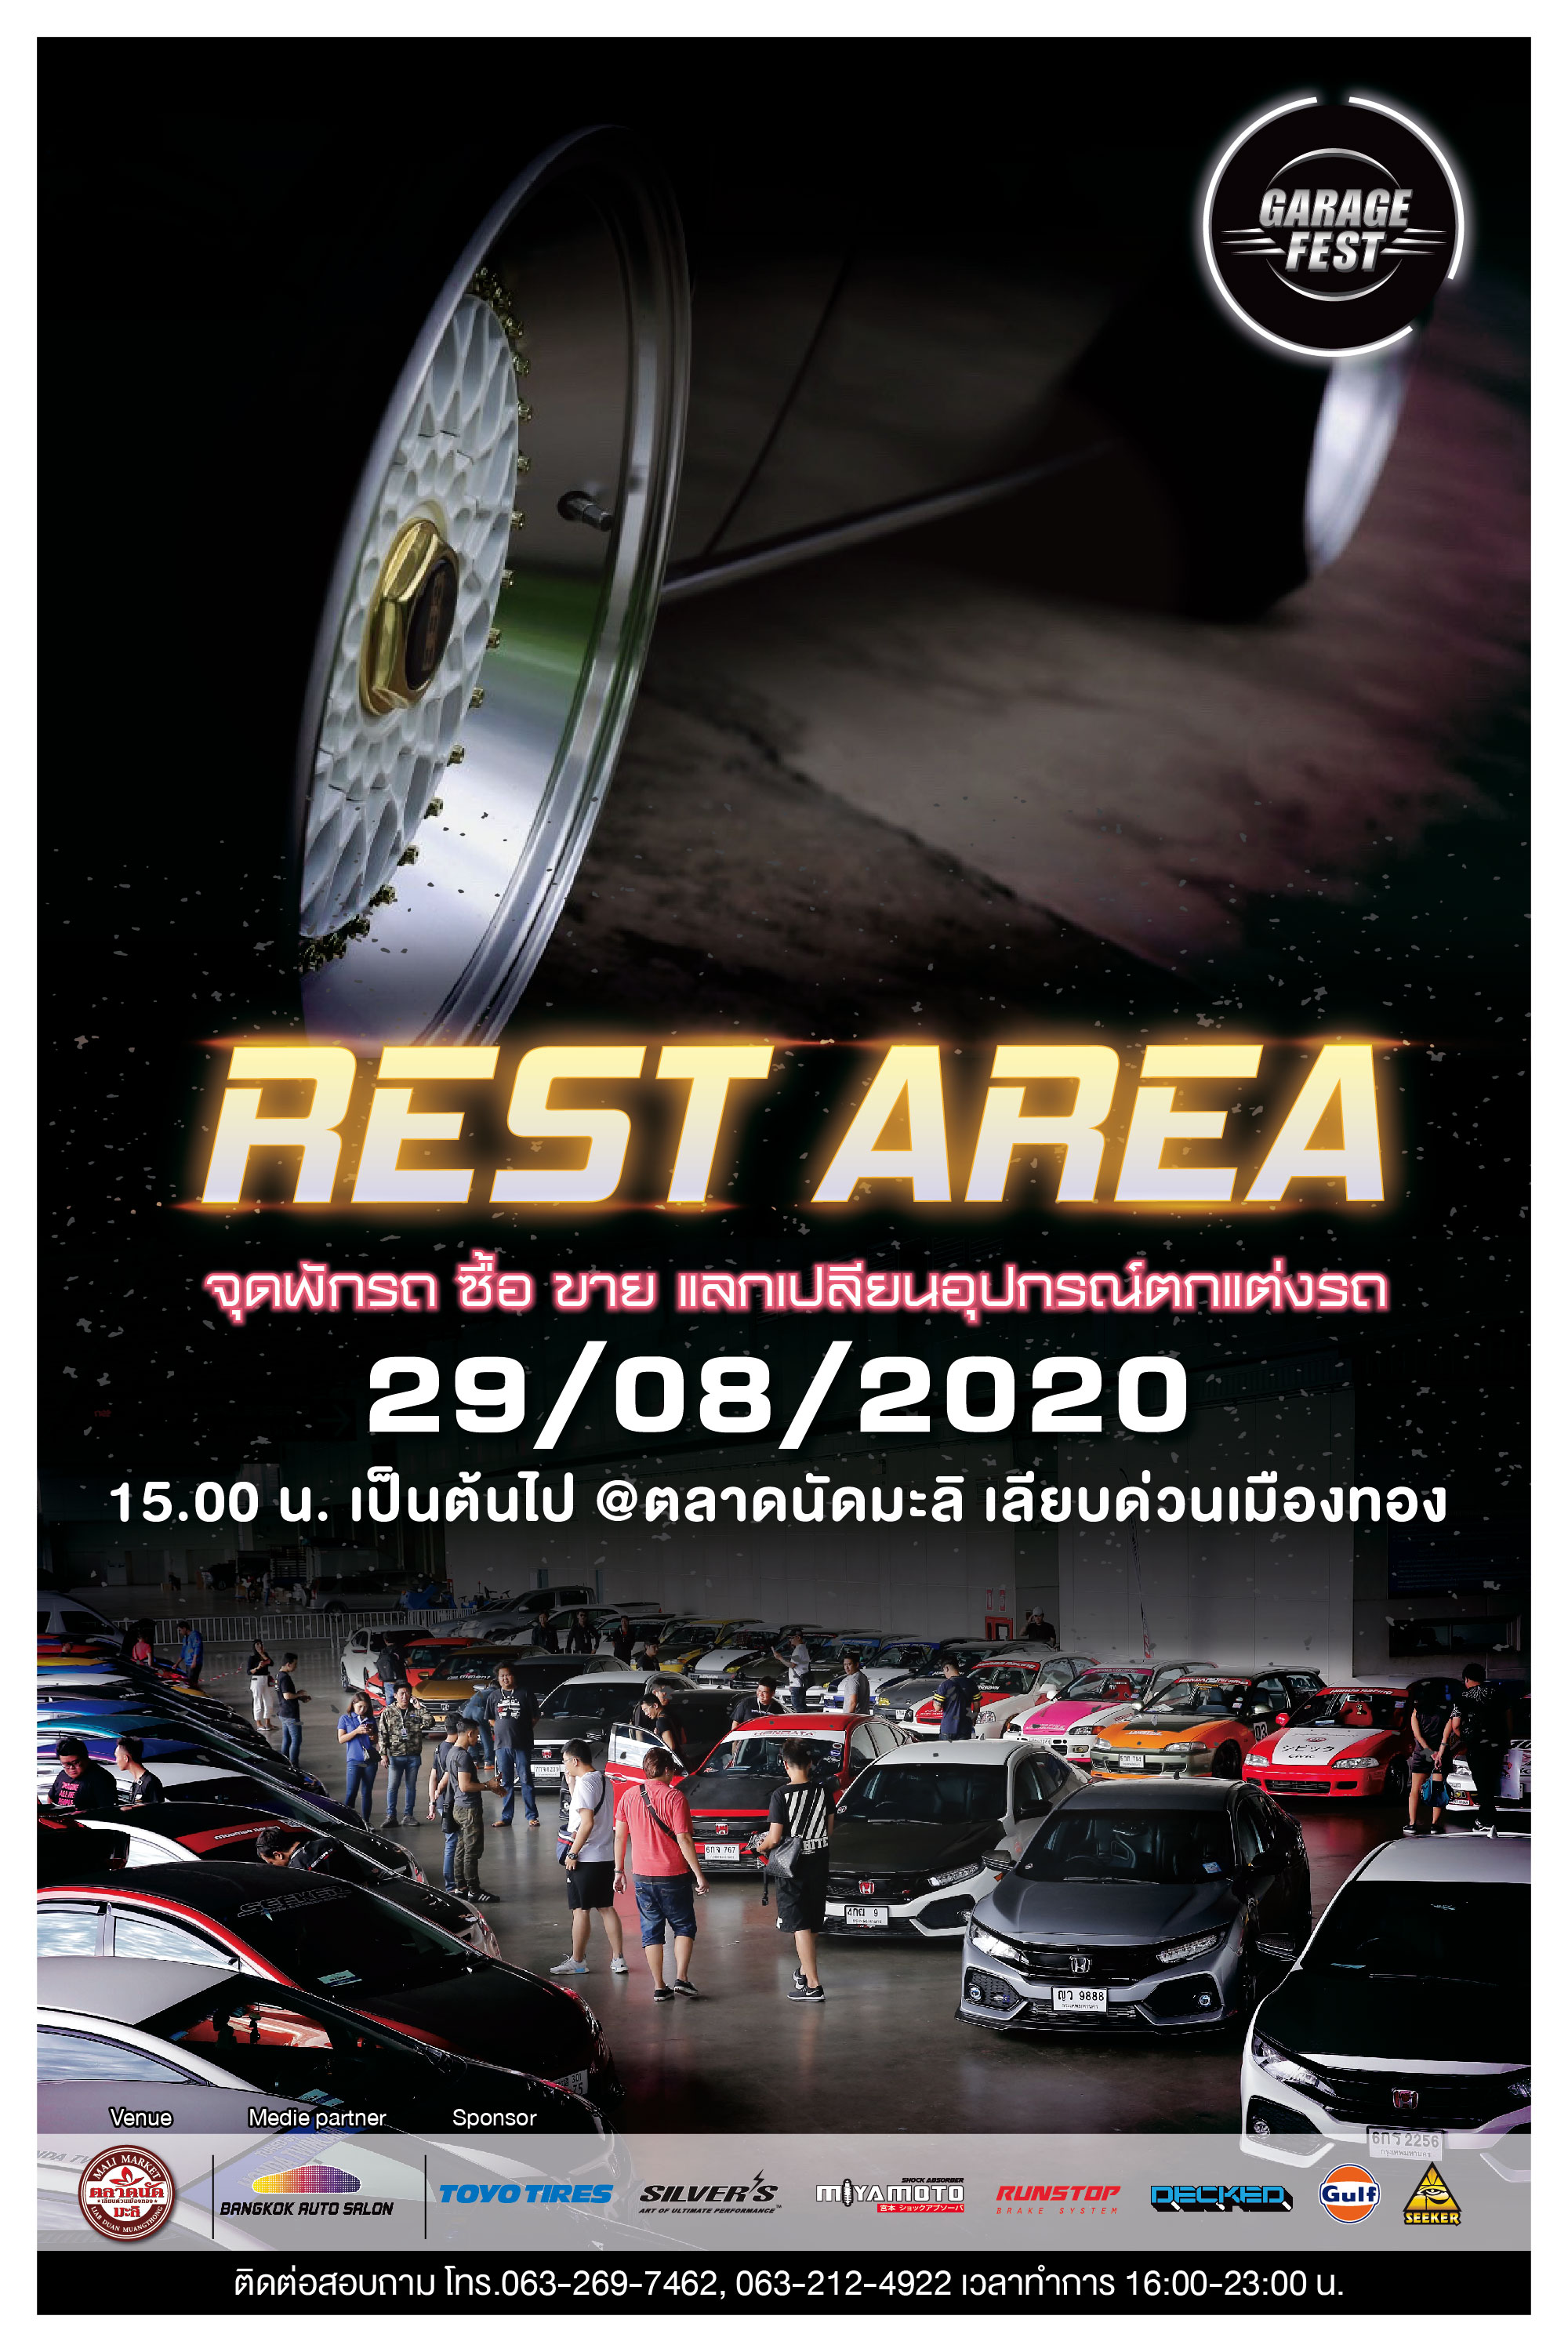 เตรียมพบกับงาน 'GARAGE FEST REST AREA จุดพักรถ ซื้อ ขาย แลกเปลี่ยนอุปกรณ์ตกแต่งรถ 29 ส.ค.นี้